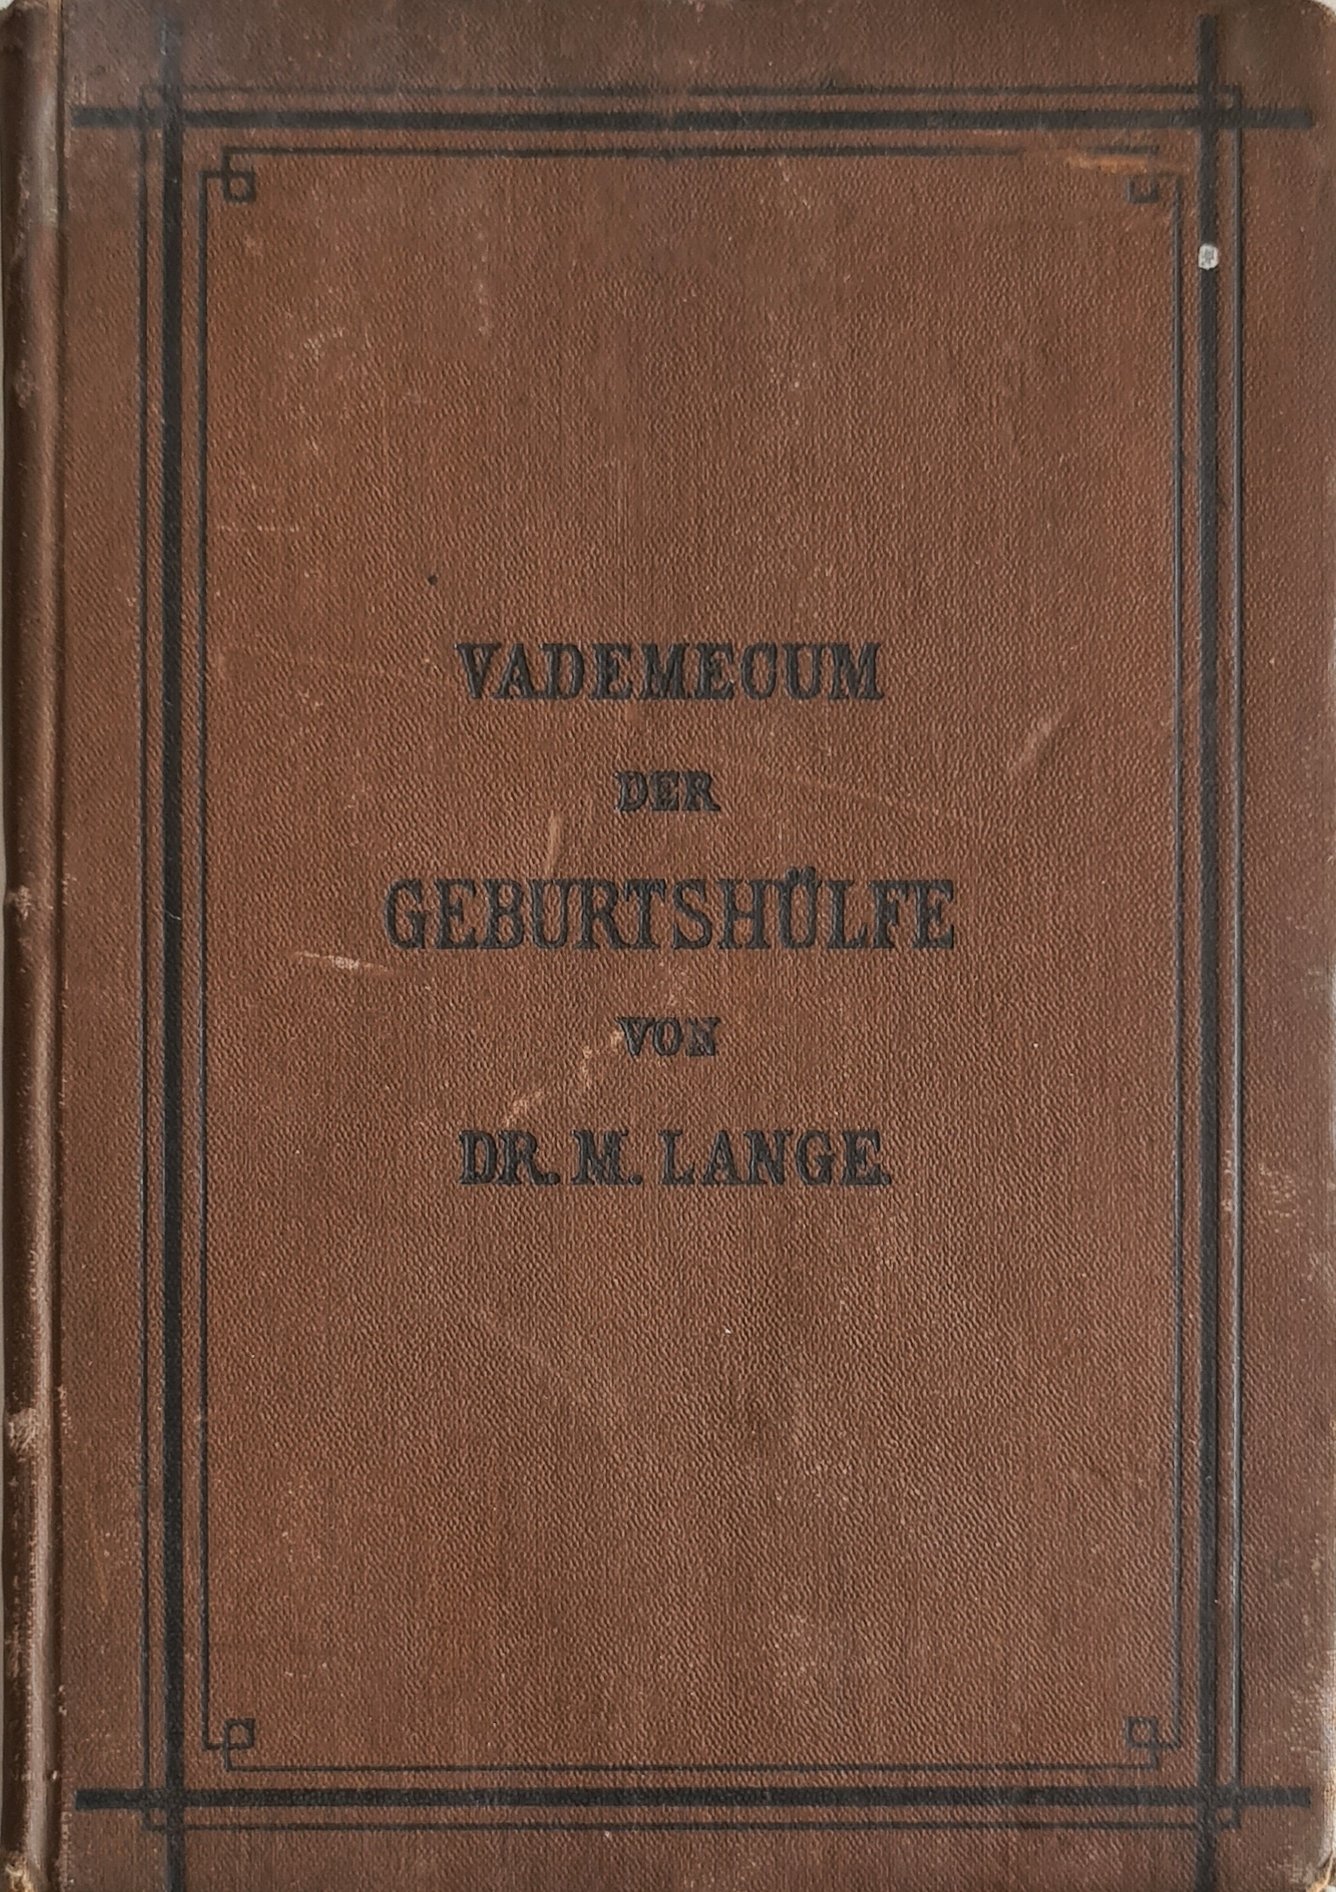 Vademecum der Geburtshülfe (Krankenhausmuseum Bielefeld e.V. CC BY-NC-SA)